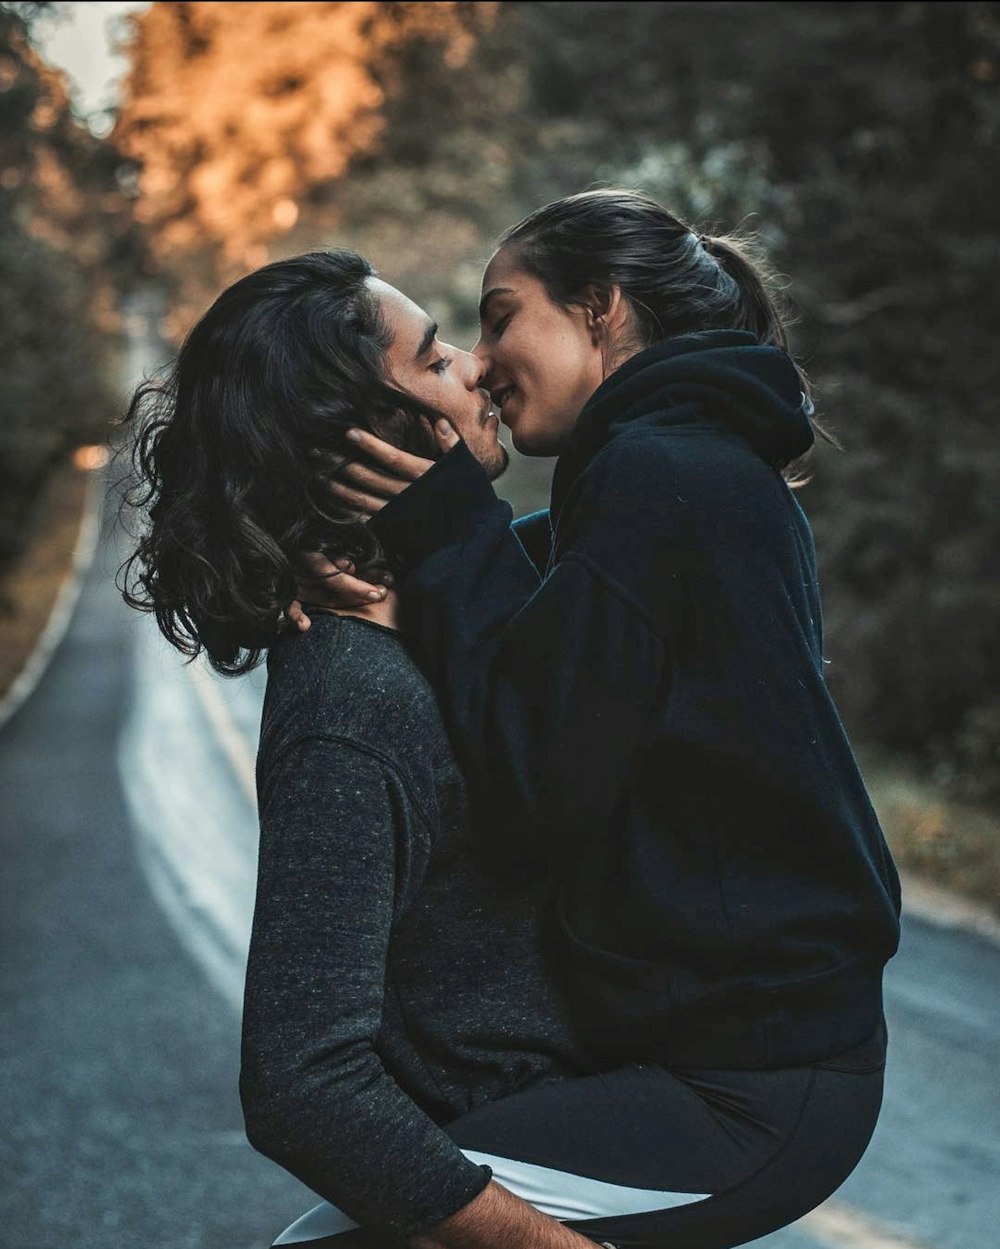 homme et femme s’embrassent et se tiennent debout sur la route